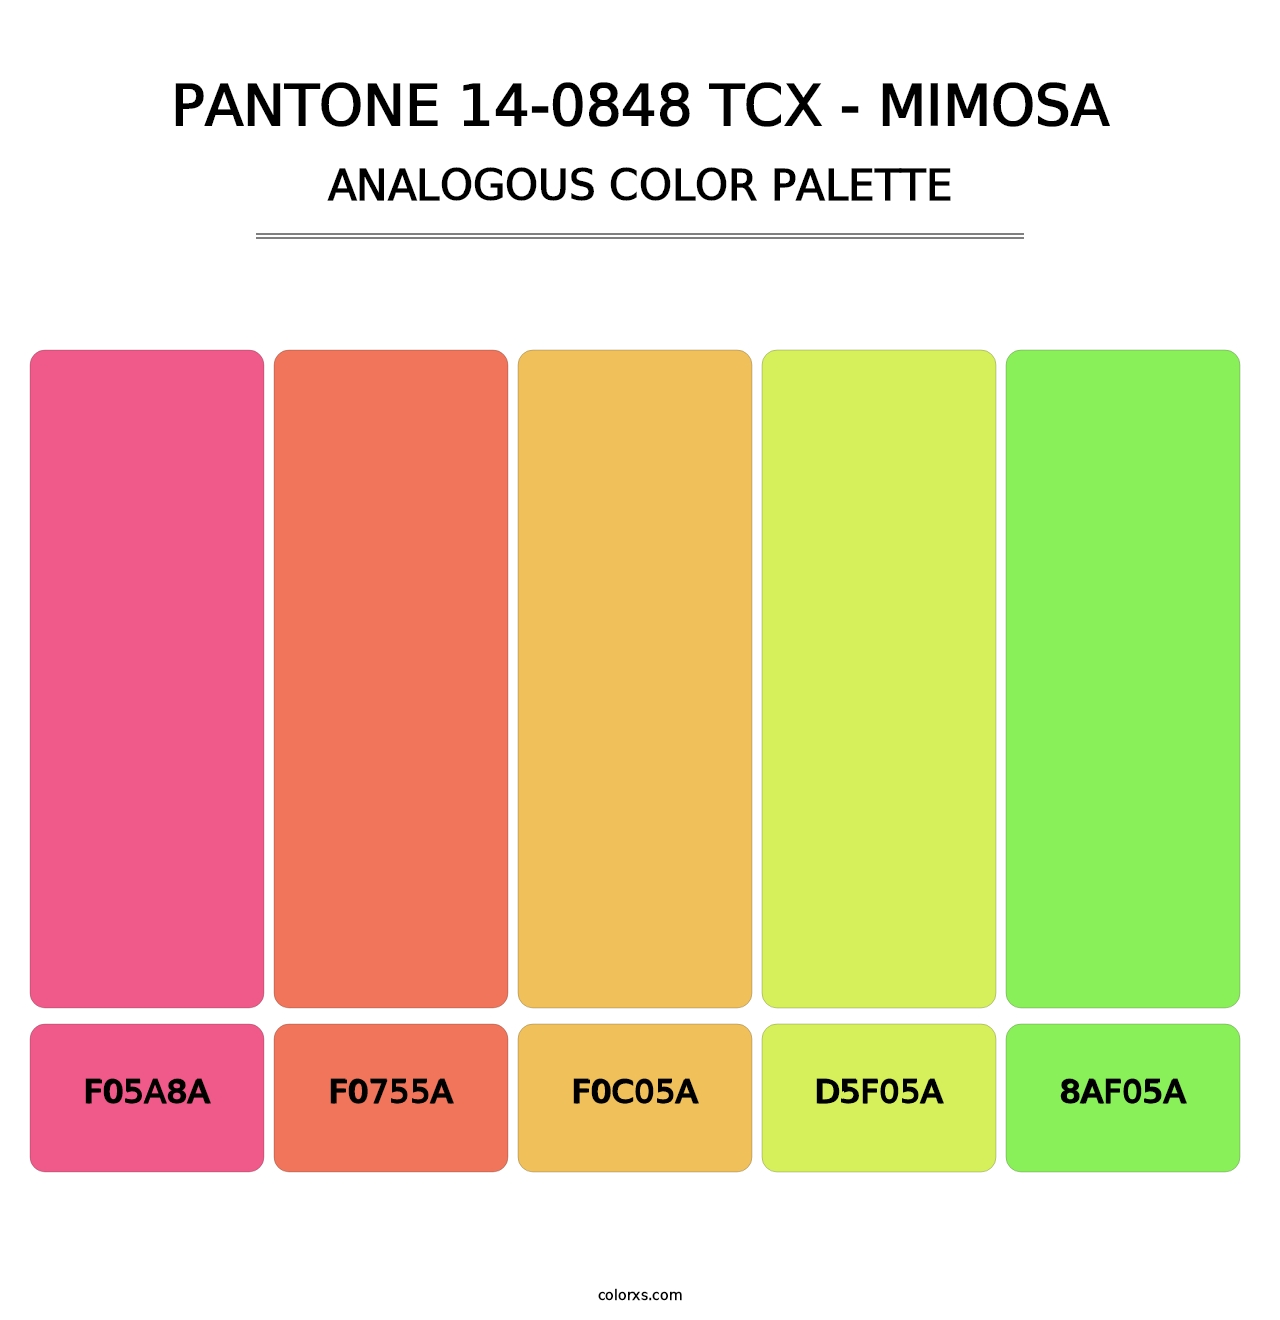 PANTONE 14-0848 TCX - Mimosa - Analogous Color Palette